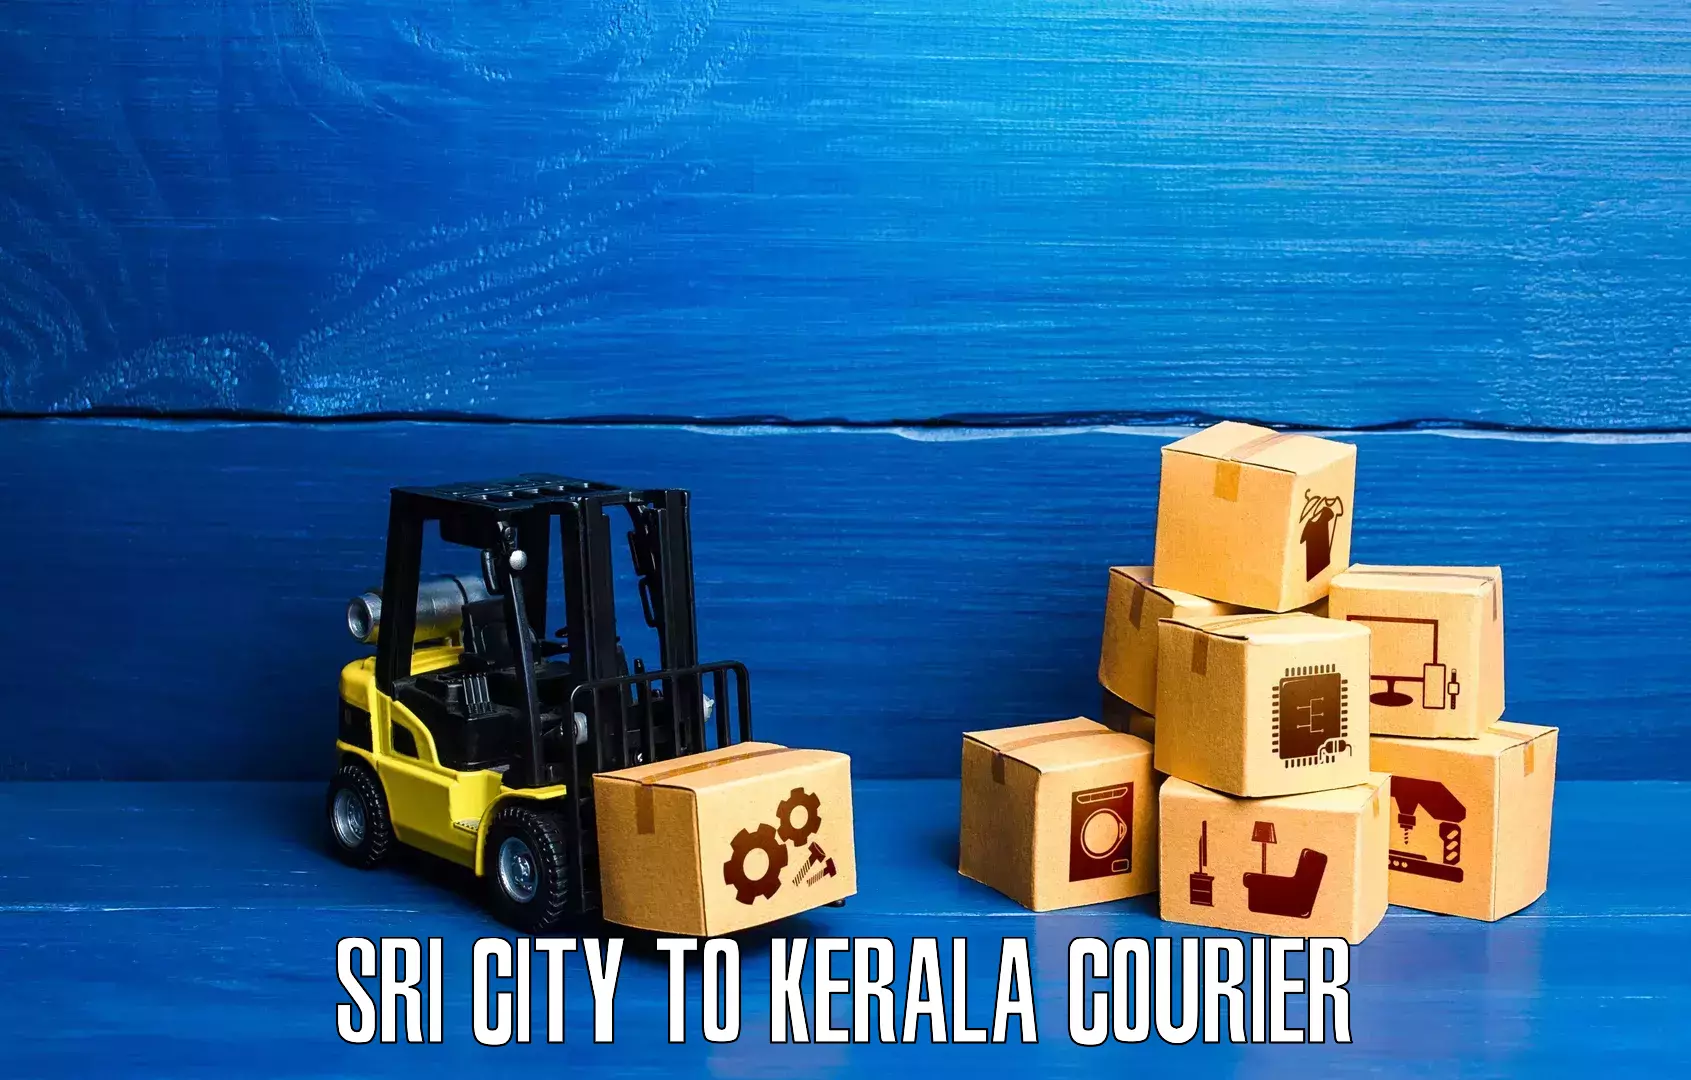 Speedy delivery service Sri City to Alakode